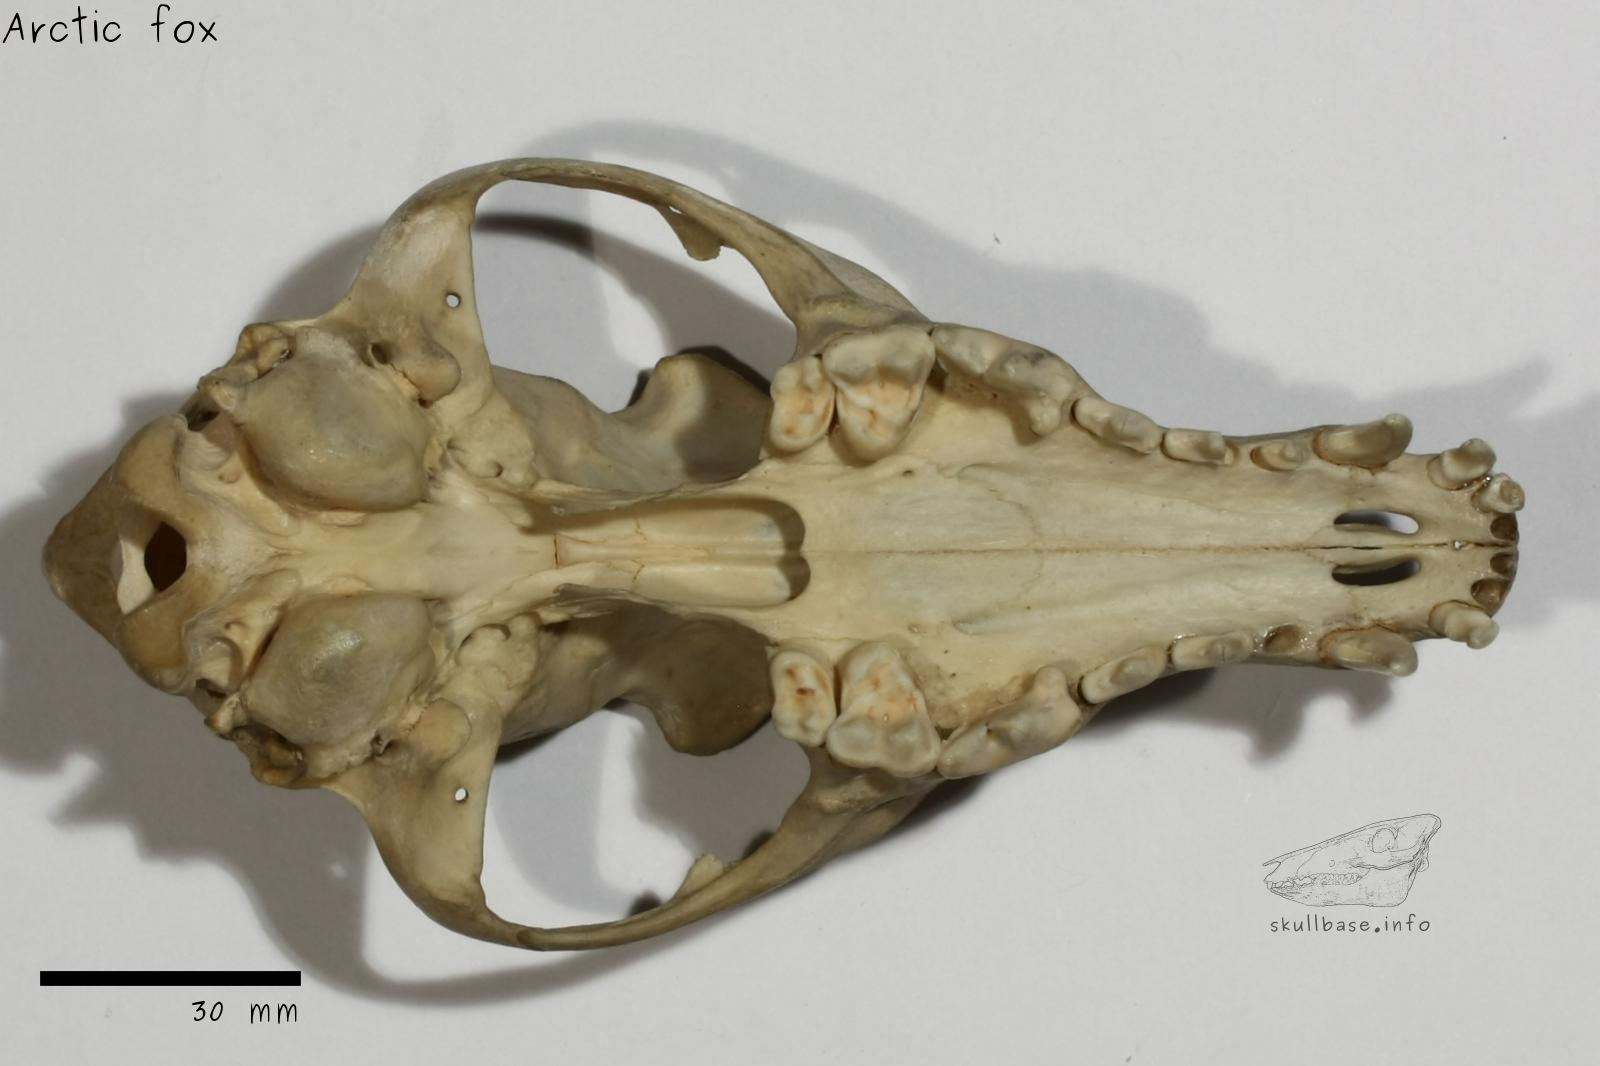 Arctic fox (Vulpes lagopus) skull ventral view